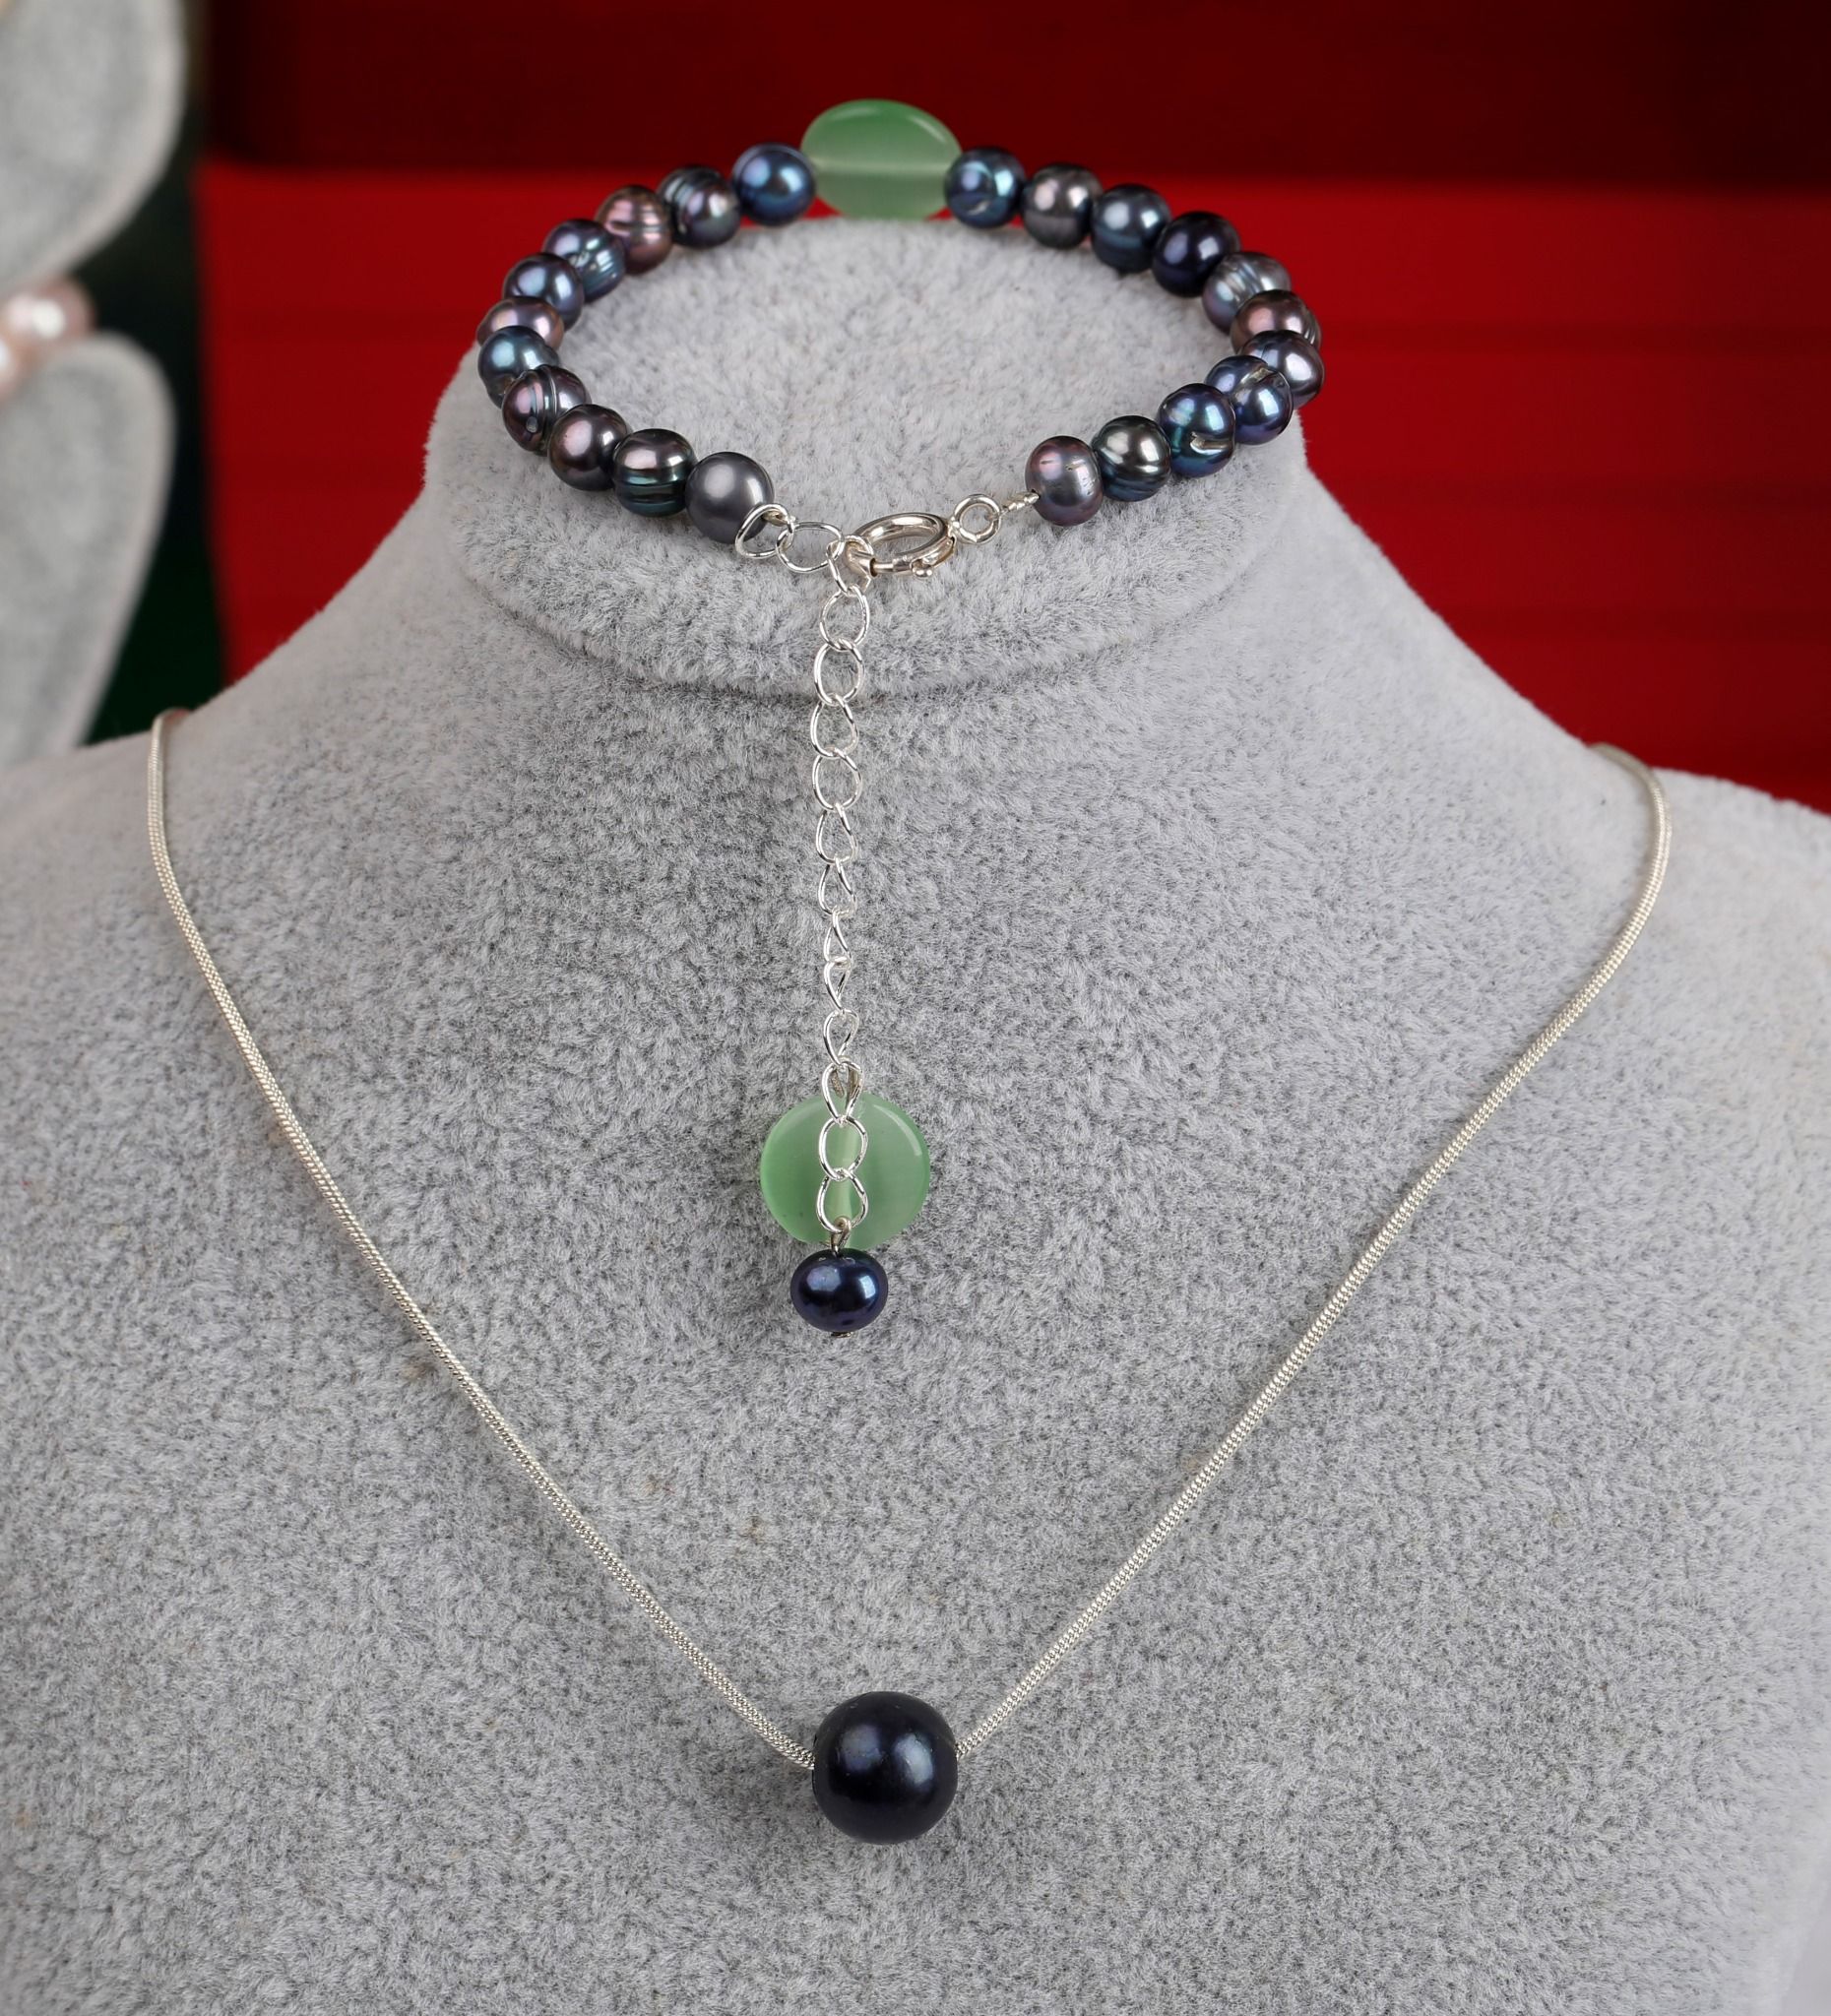  Dây chuyền bạc và Vòng tay Ngọc trai đen ánh xanh kết hợp đá Charm thương hiệu Opal 